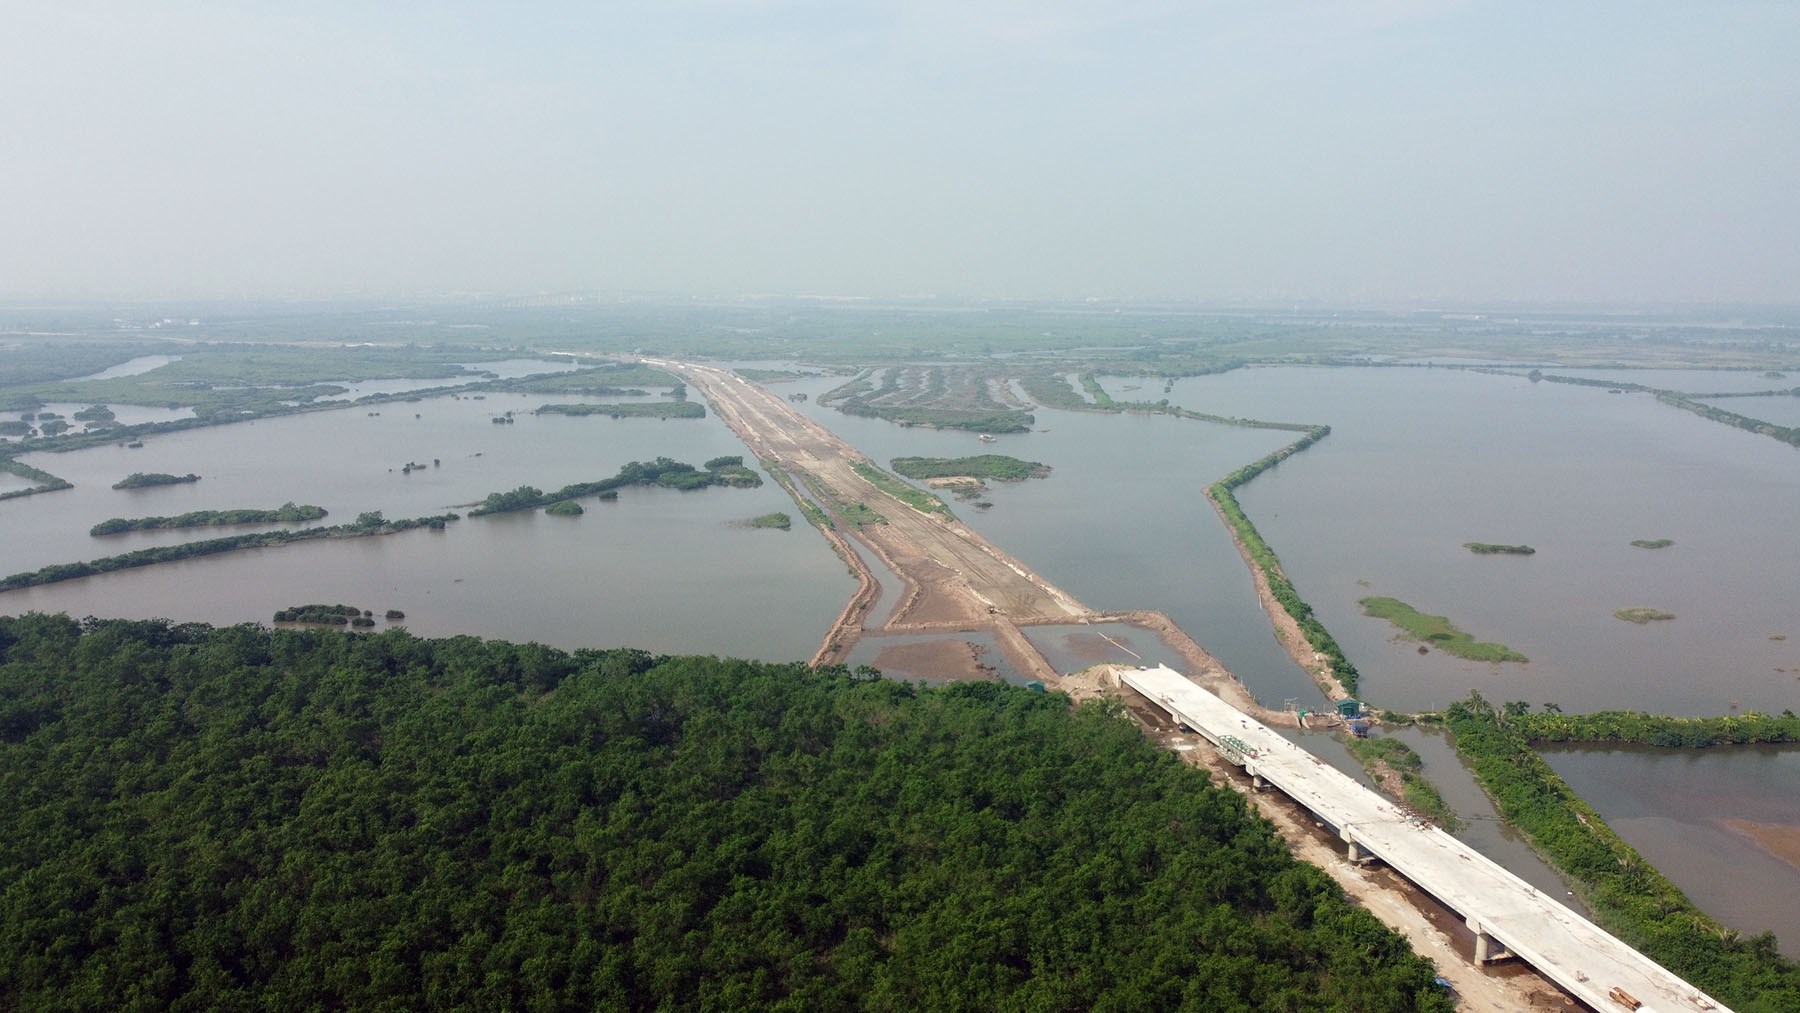 Toàn cảnh cầu sông Rút đang xây trên tuyến kết nối cao tốc Móng Cái - Hải Phòng đến thị xã Đông Triều, Quảng Ninh